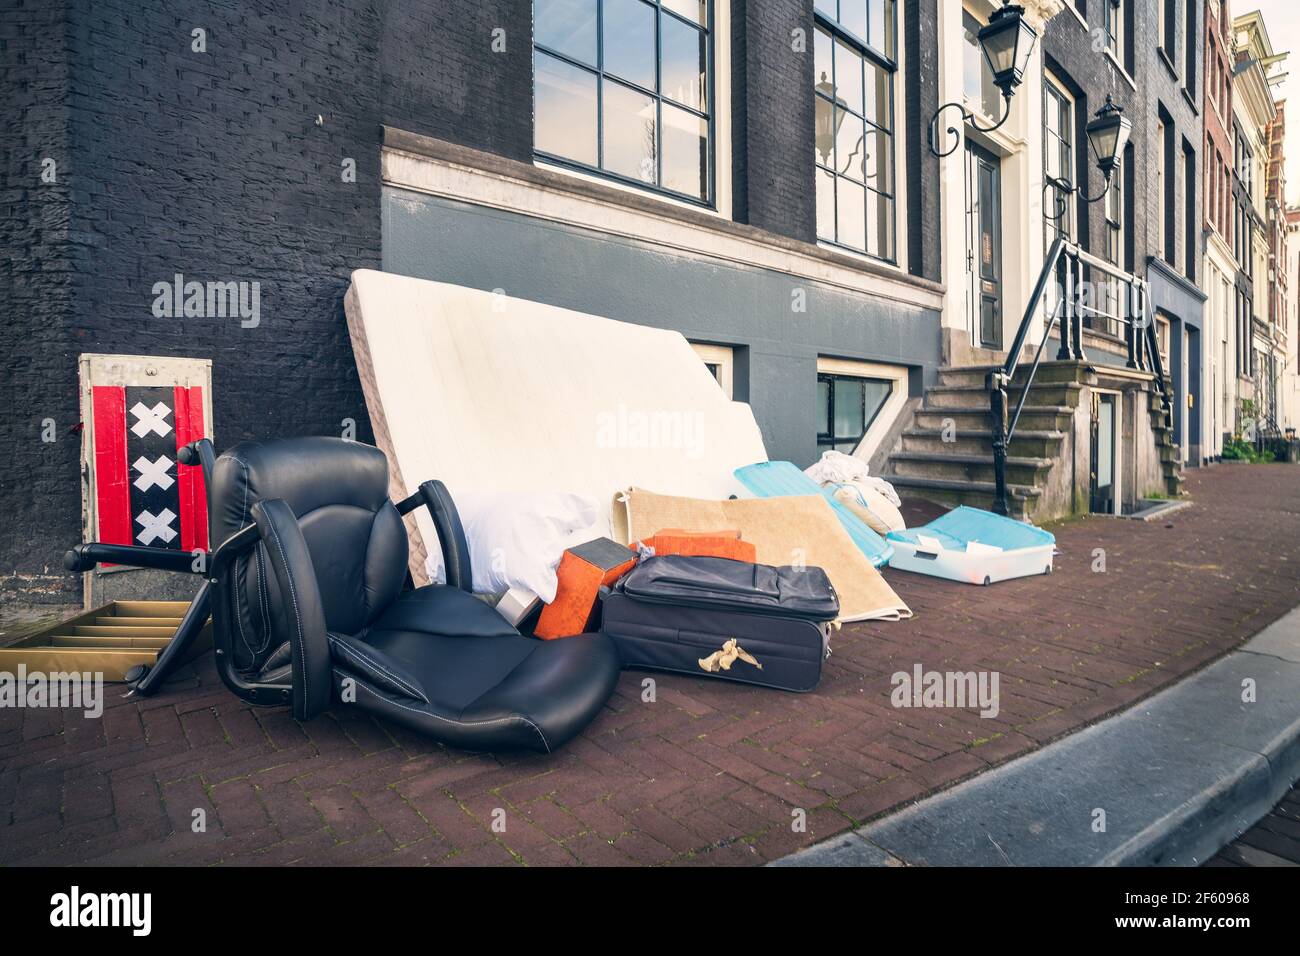 Buttare via cose inutili che chiunque può raccogliere, vecchia tradizione di Amsterdam, Paesi Bassi. Foto Stock